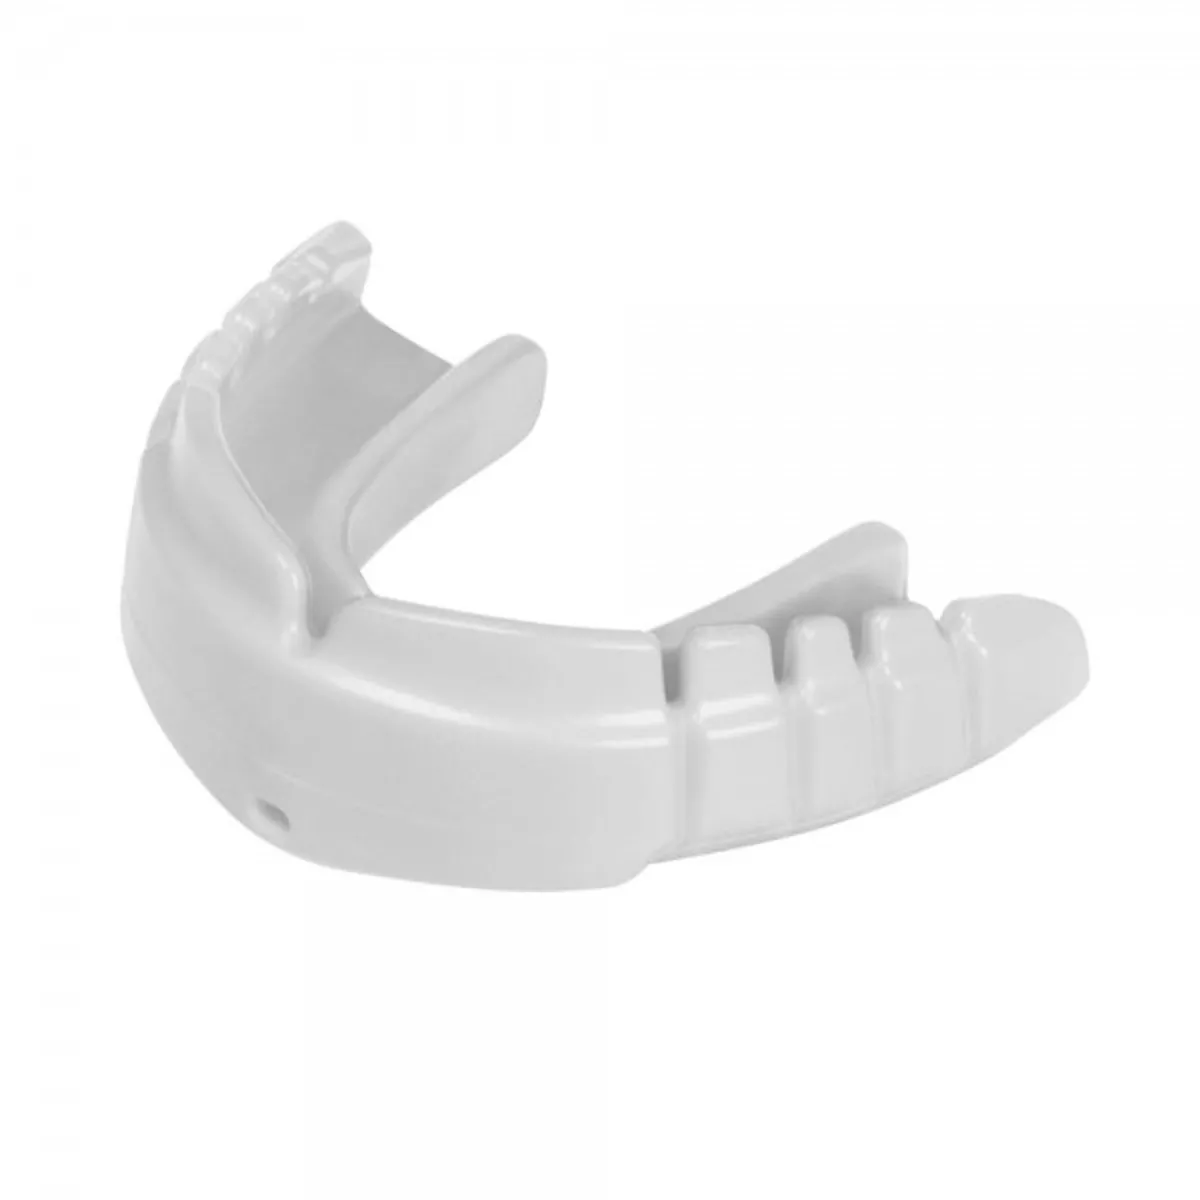 OPRO mouthguard SnapFit Braces white